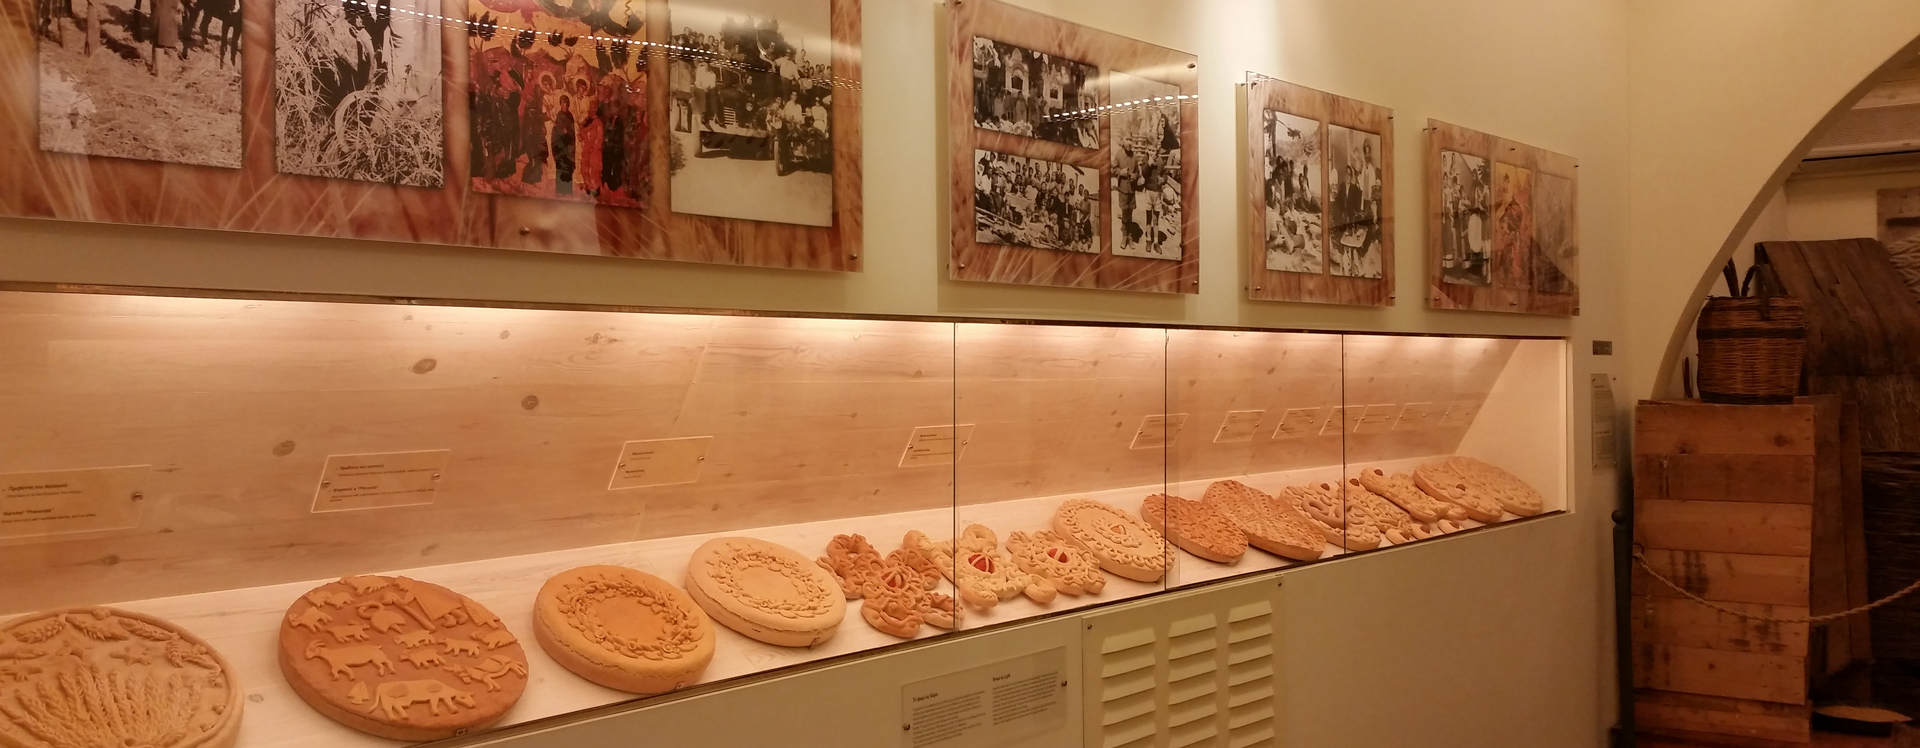 20η έκθεση ψωμιού & αρτοσκευασμάτων στην Αμφίκλεια